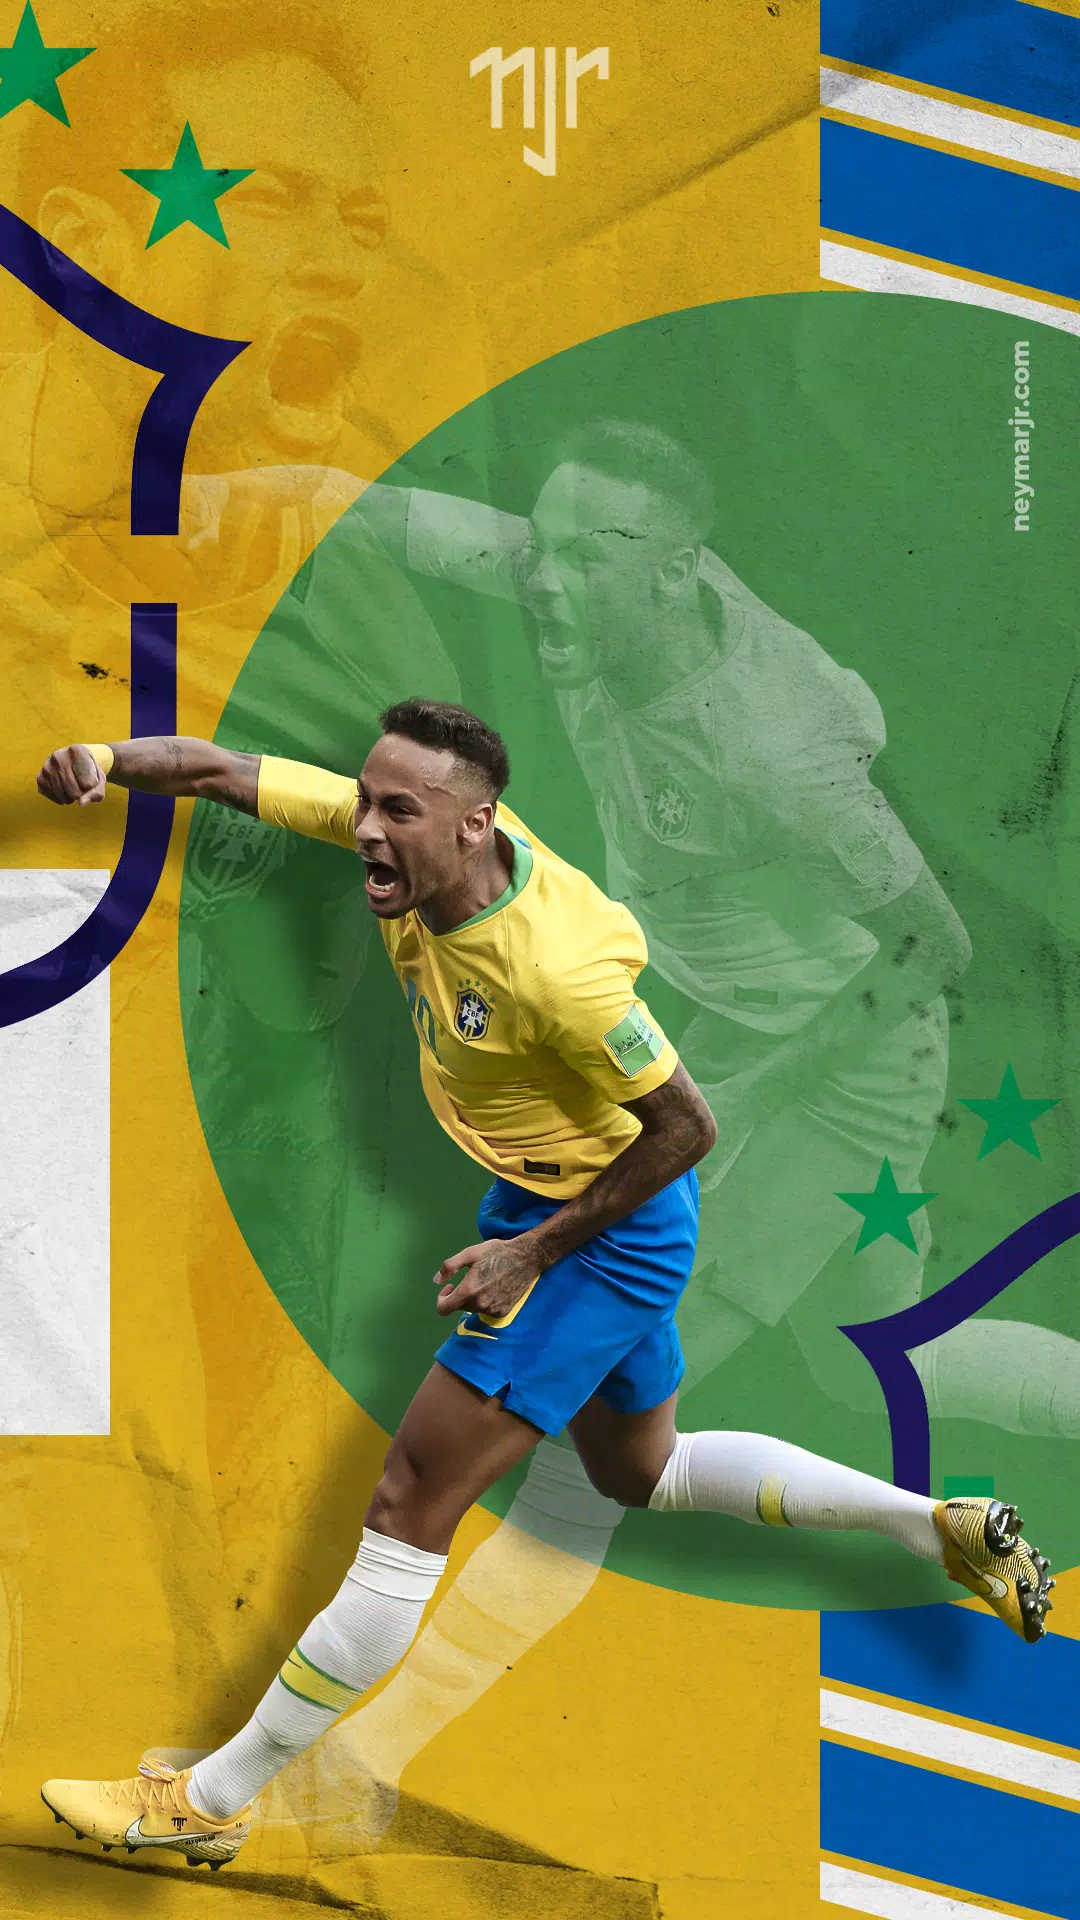 Fondos de Neymar Jr APK pour Android Télécharger